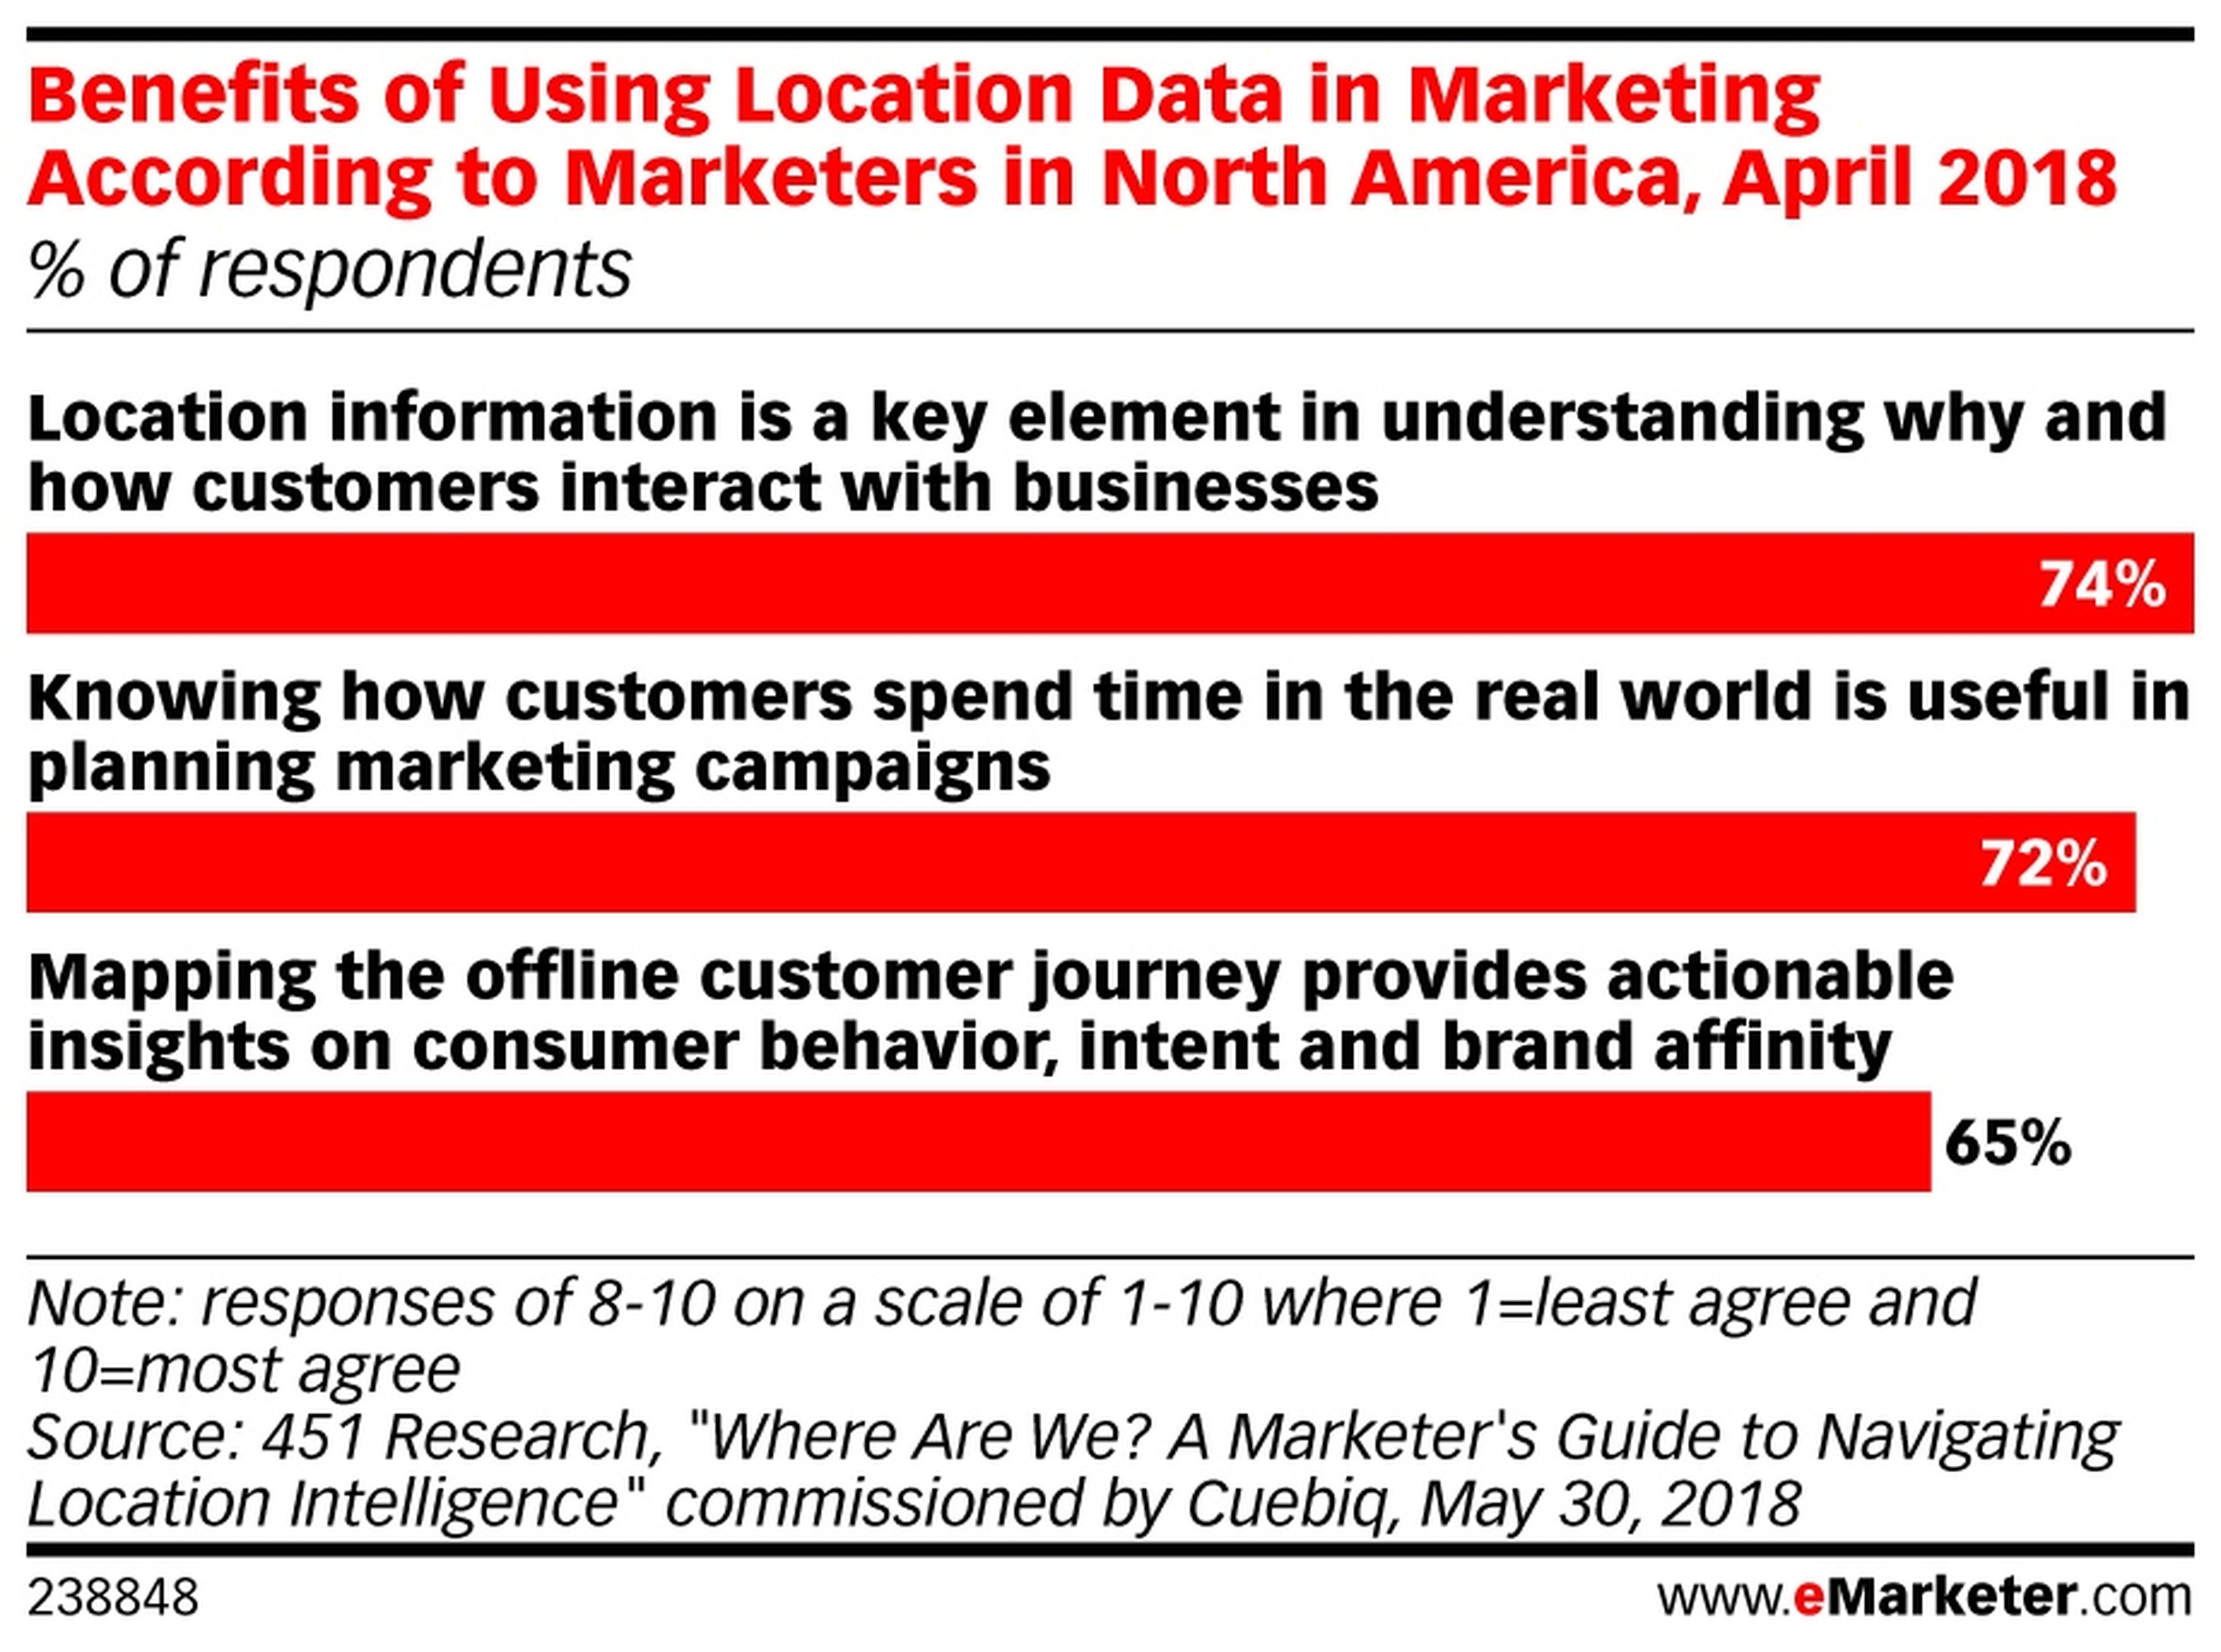 Beneficios de utilizar la localización en marketing según los anunciantes en EE.UU, abril de 2018.